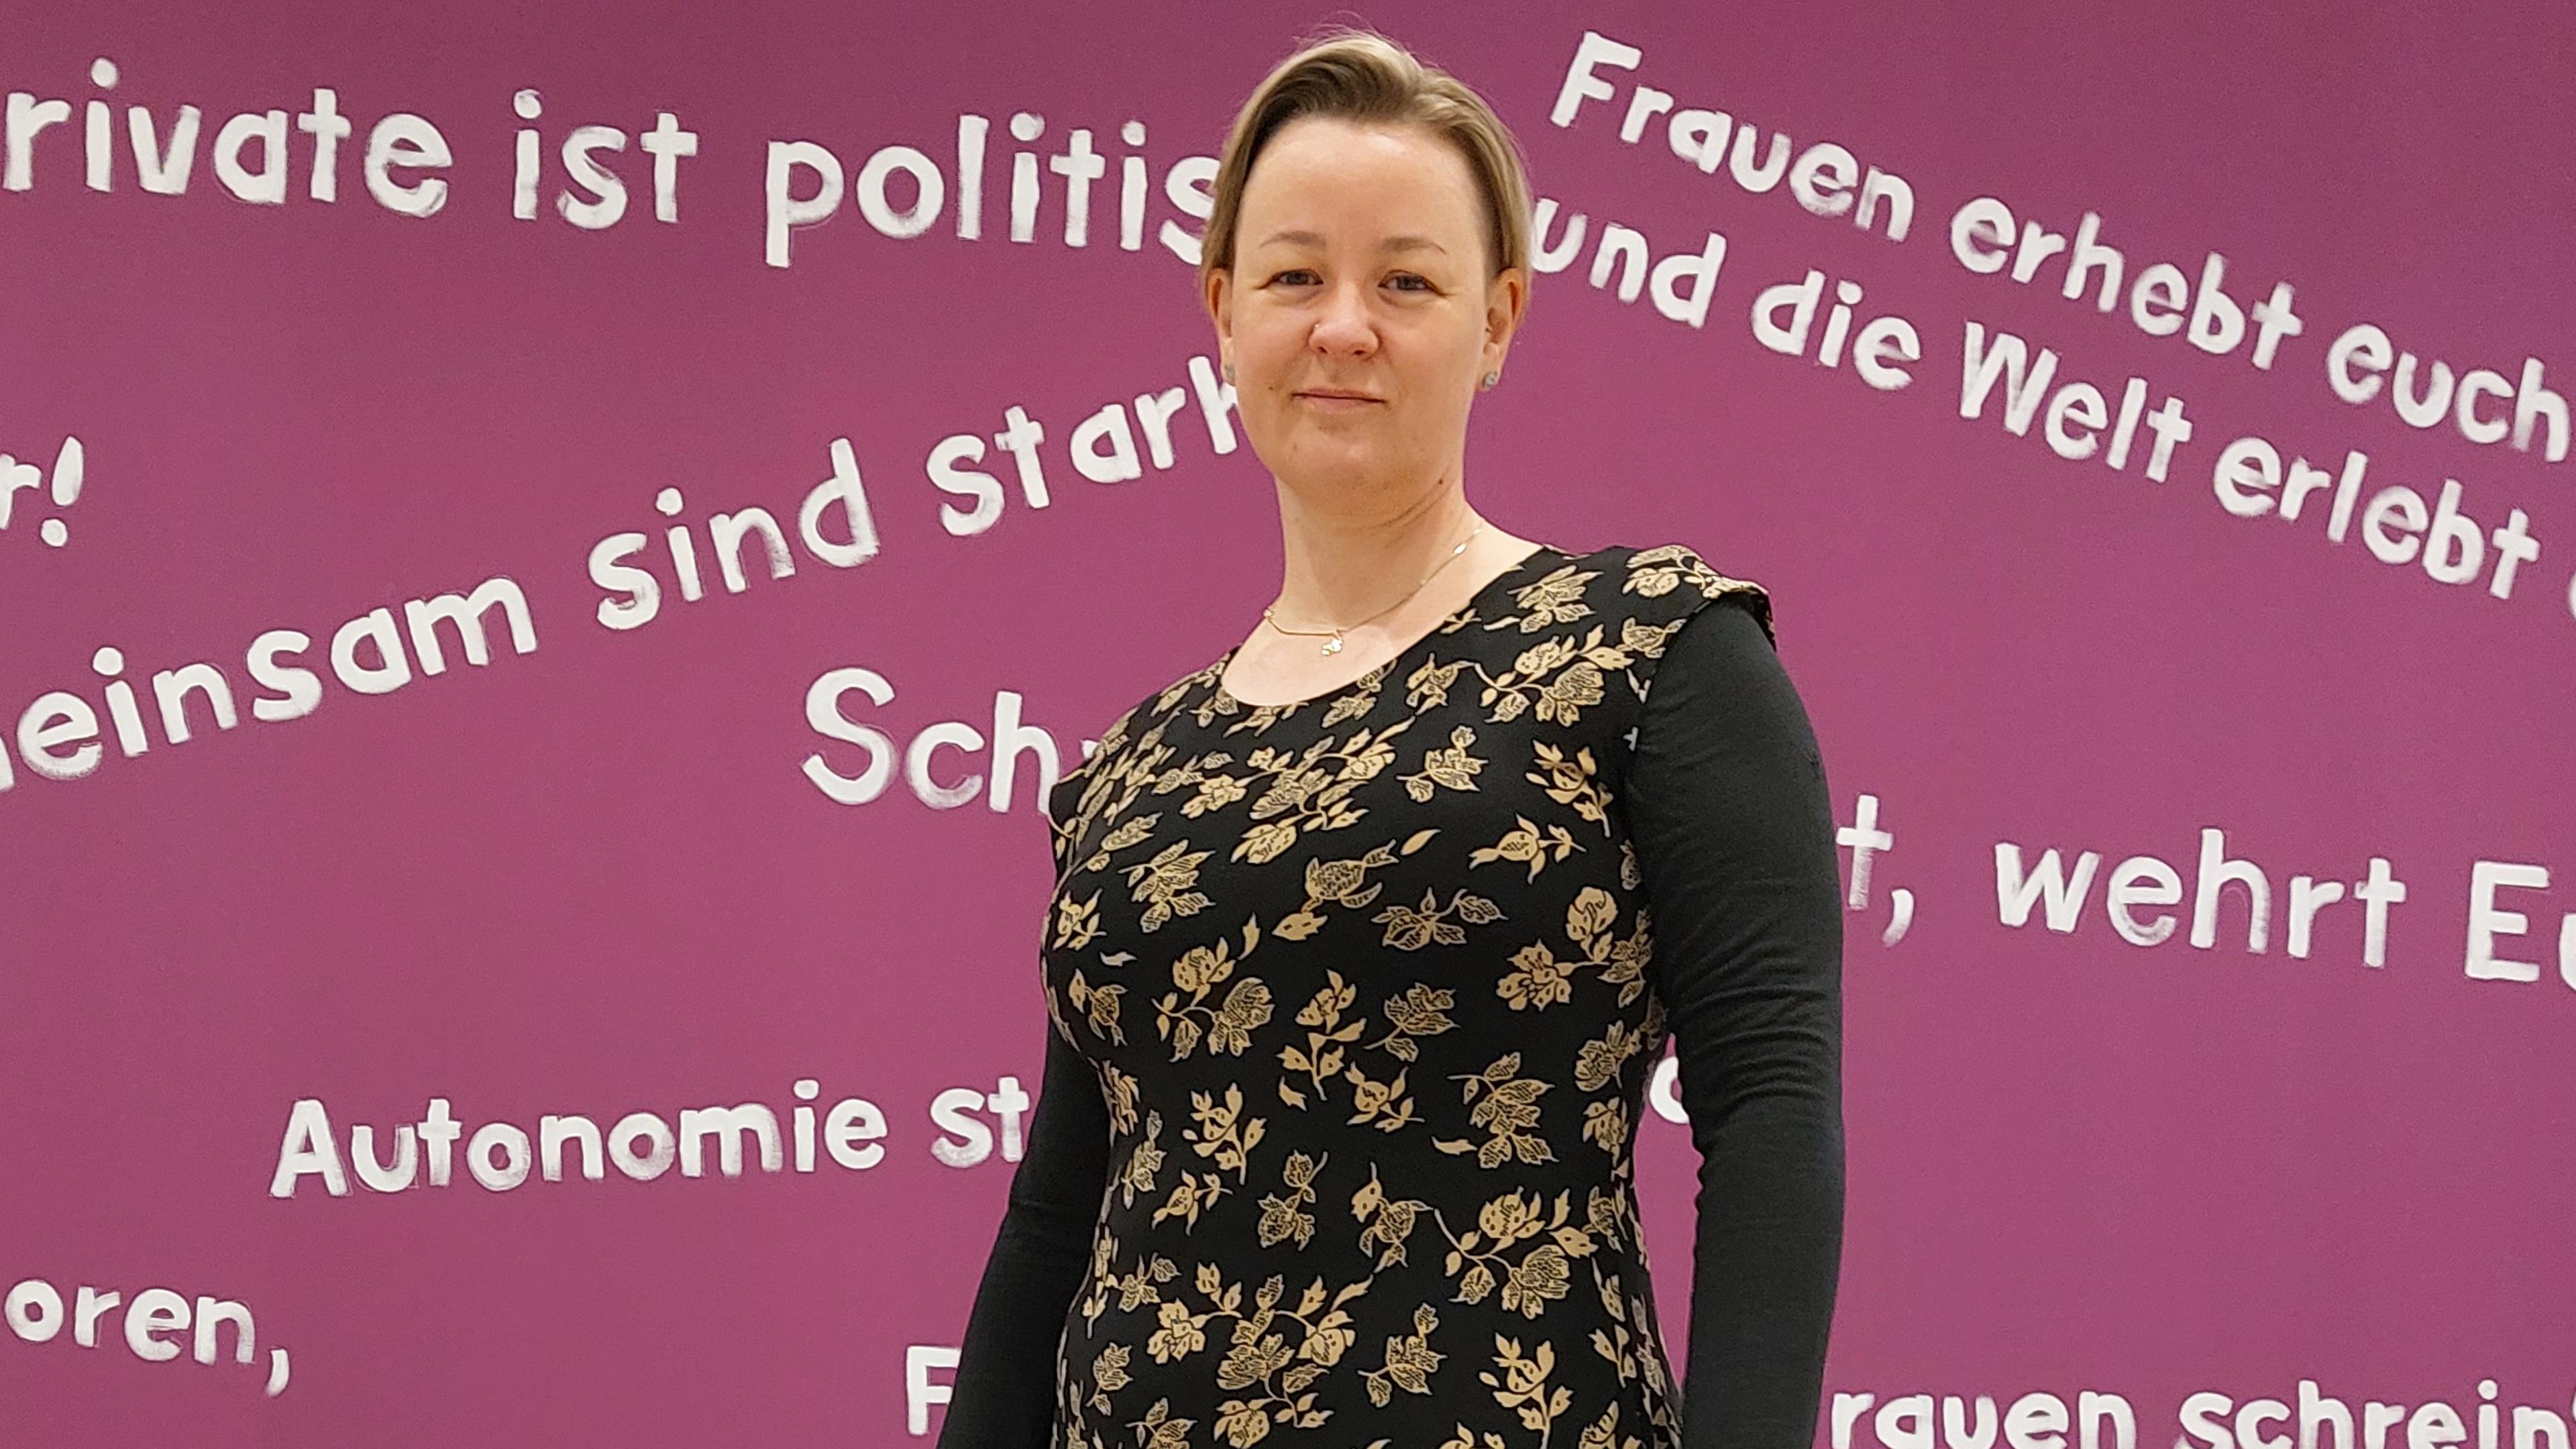 Sandra Schmitz vor beerenfarbener Wand mit diversen feministischen Schriftzügen.